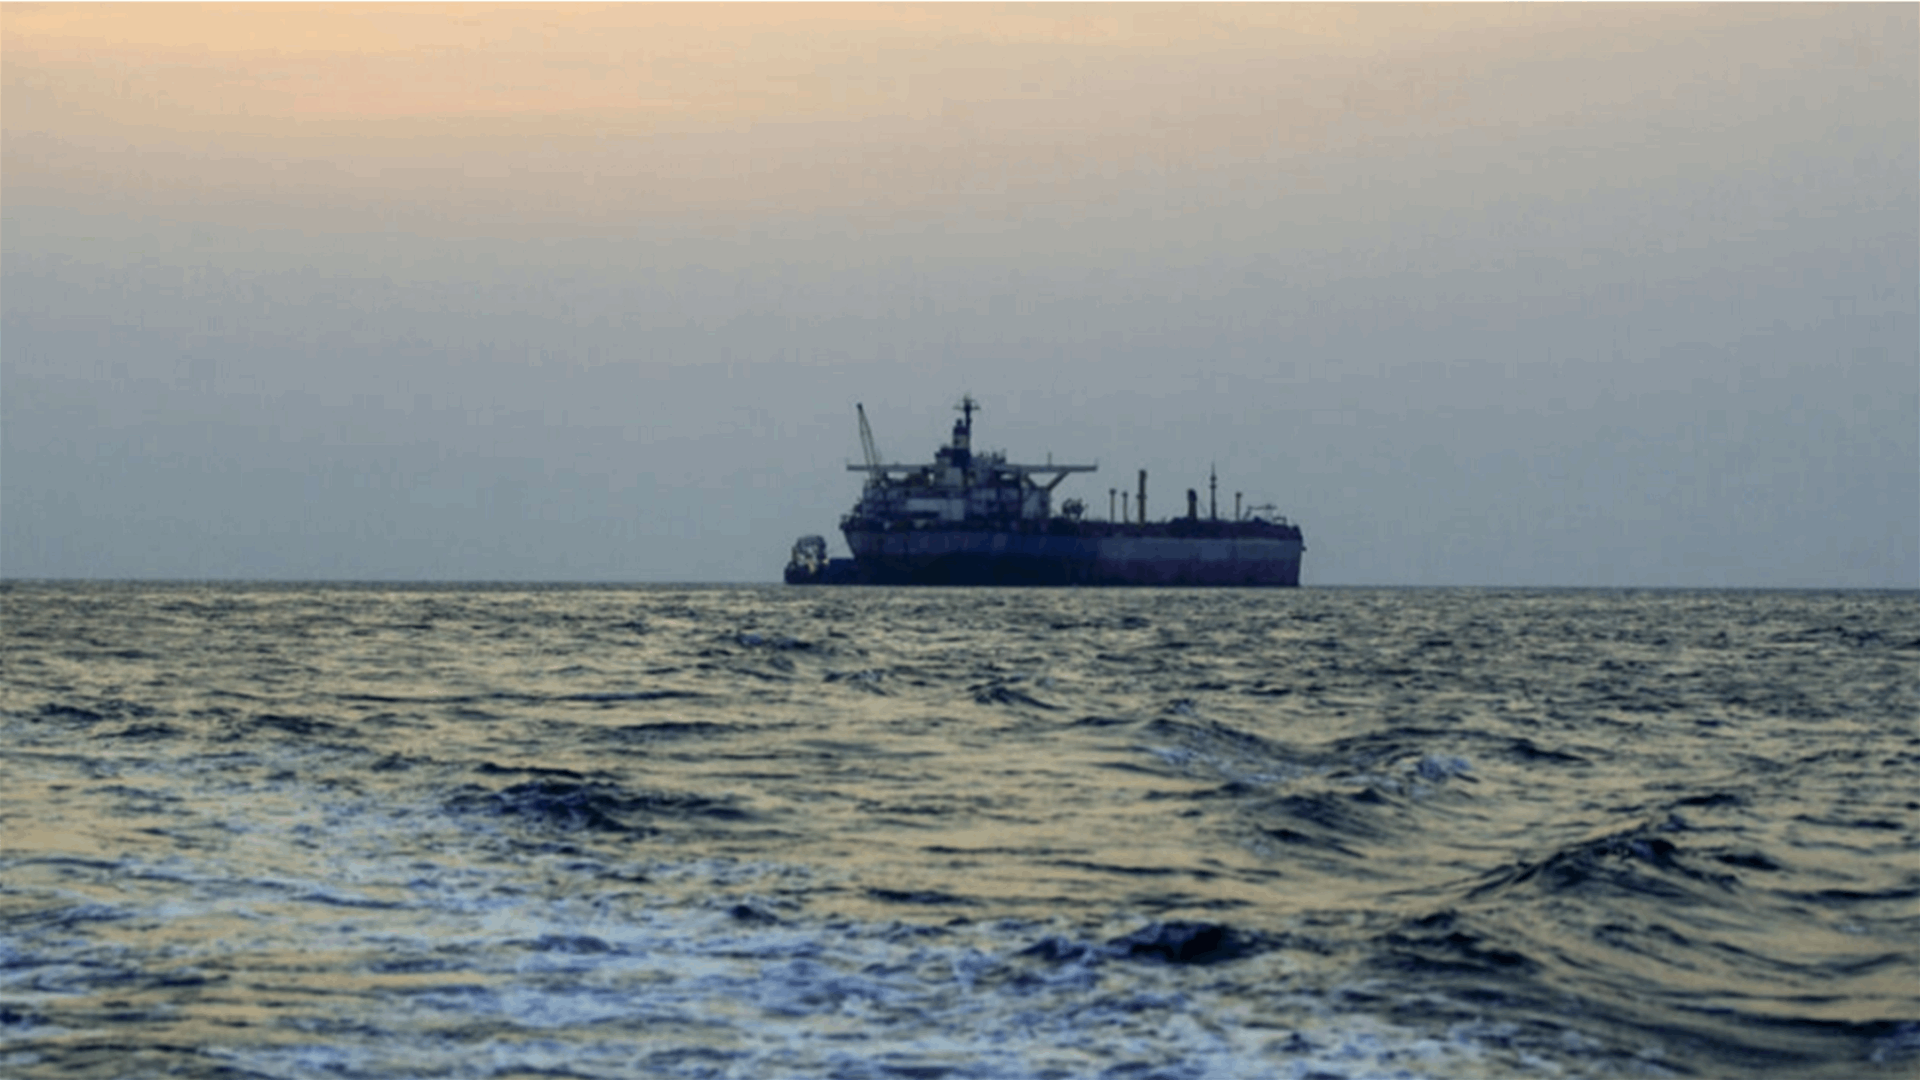 هيئة عمليات التجارة البحرية البريطانية: ربان سفينة تجارية أبلغ عن سقوط صاروخ في الماء بالقرب منها